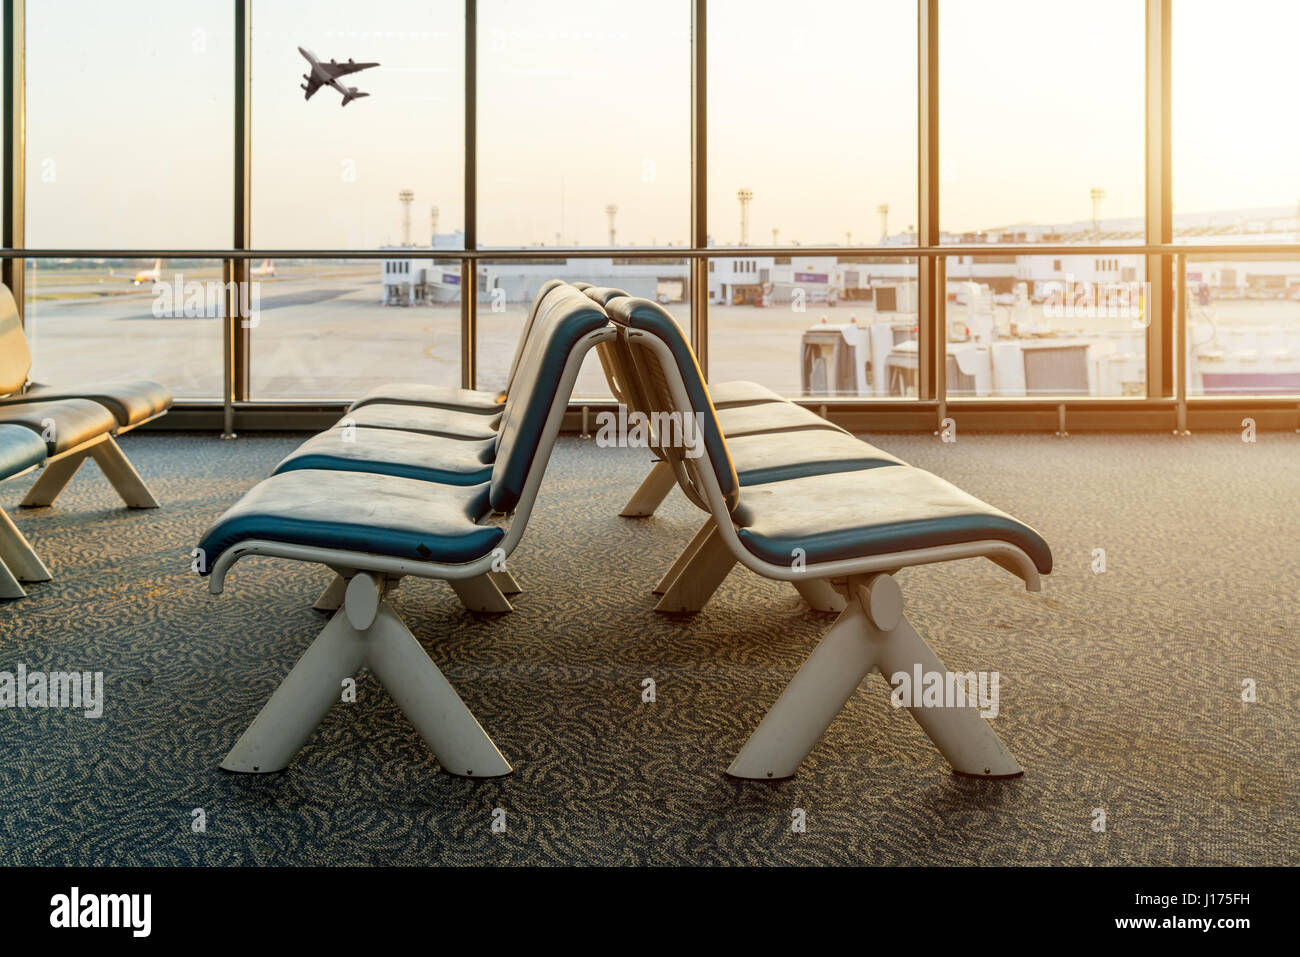 Sedie per l'aeroporto immagini e fotografie stock ad alta risoluzione -  Pagina 2 - Alamy